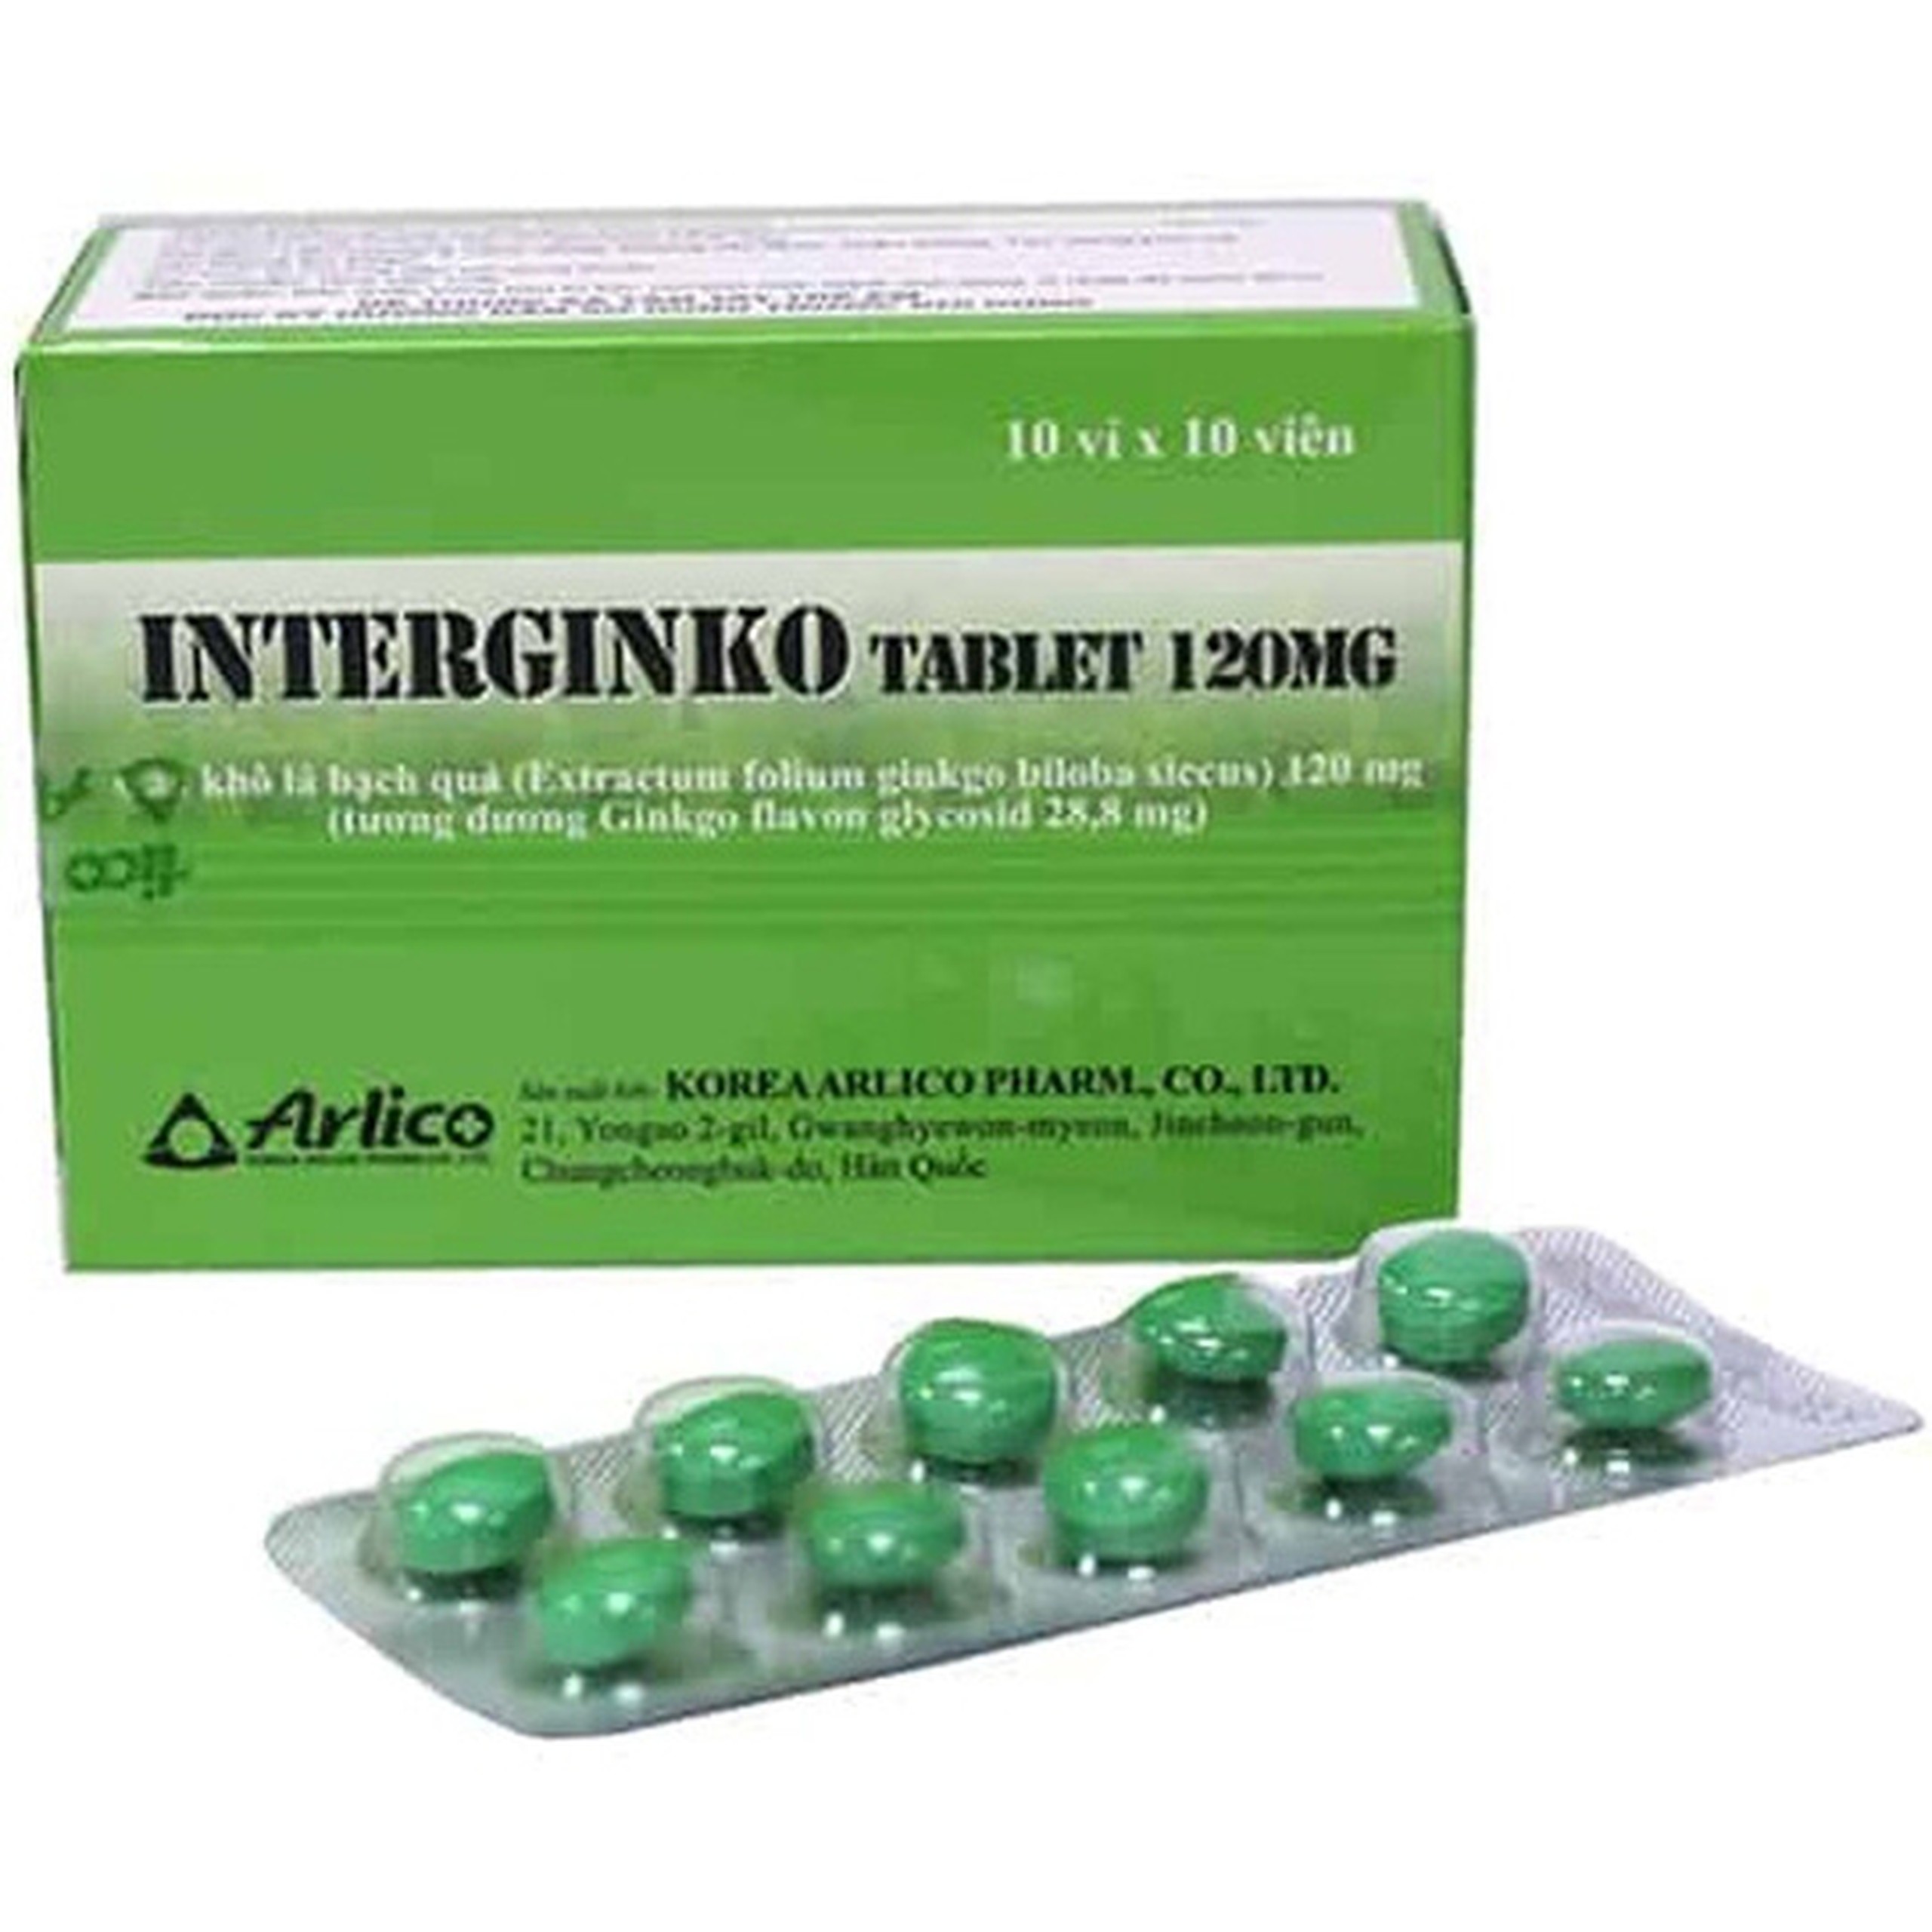 Thuốc Interginko 120mg Arlico điều trị rối loạn tuần hoàn ngoại biên (10 vỉ x 10 viên)